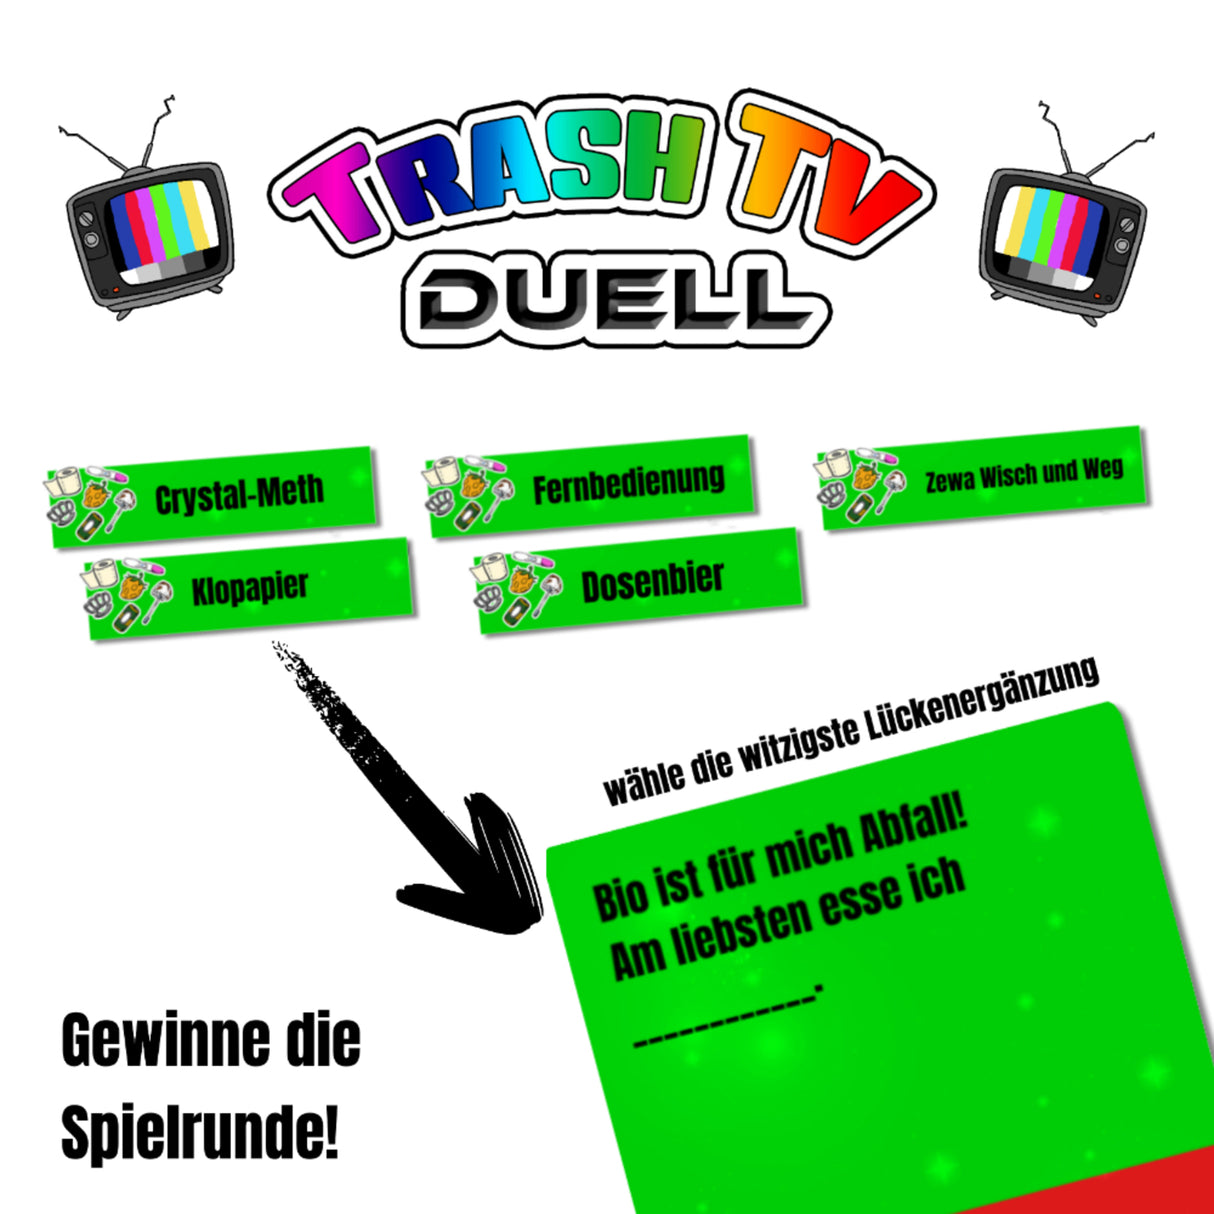 Trash-TV Duell - das lustige Kartenspiel für alle Fans der leichten Fernsehunterhaltung